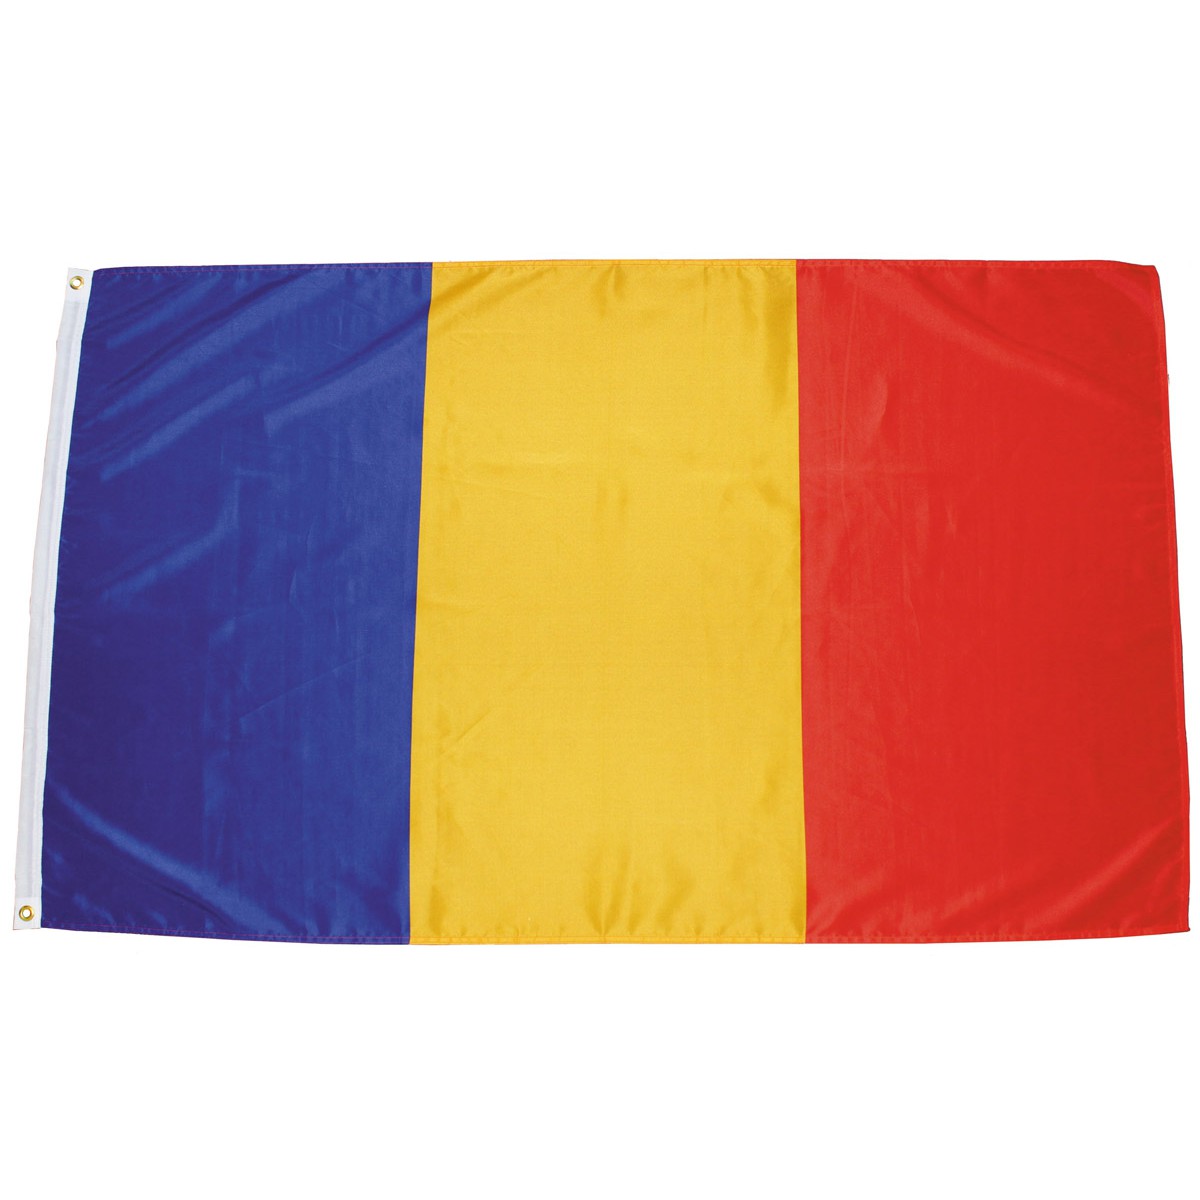 Rumunská vlajka 150x90cm obojstranná polyester megamix.sk